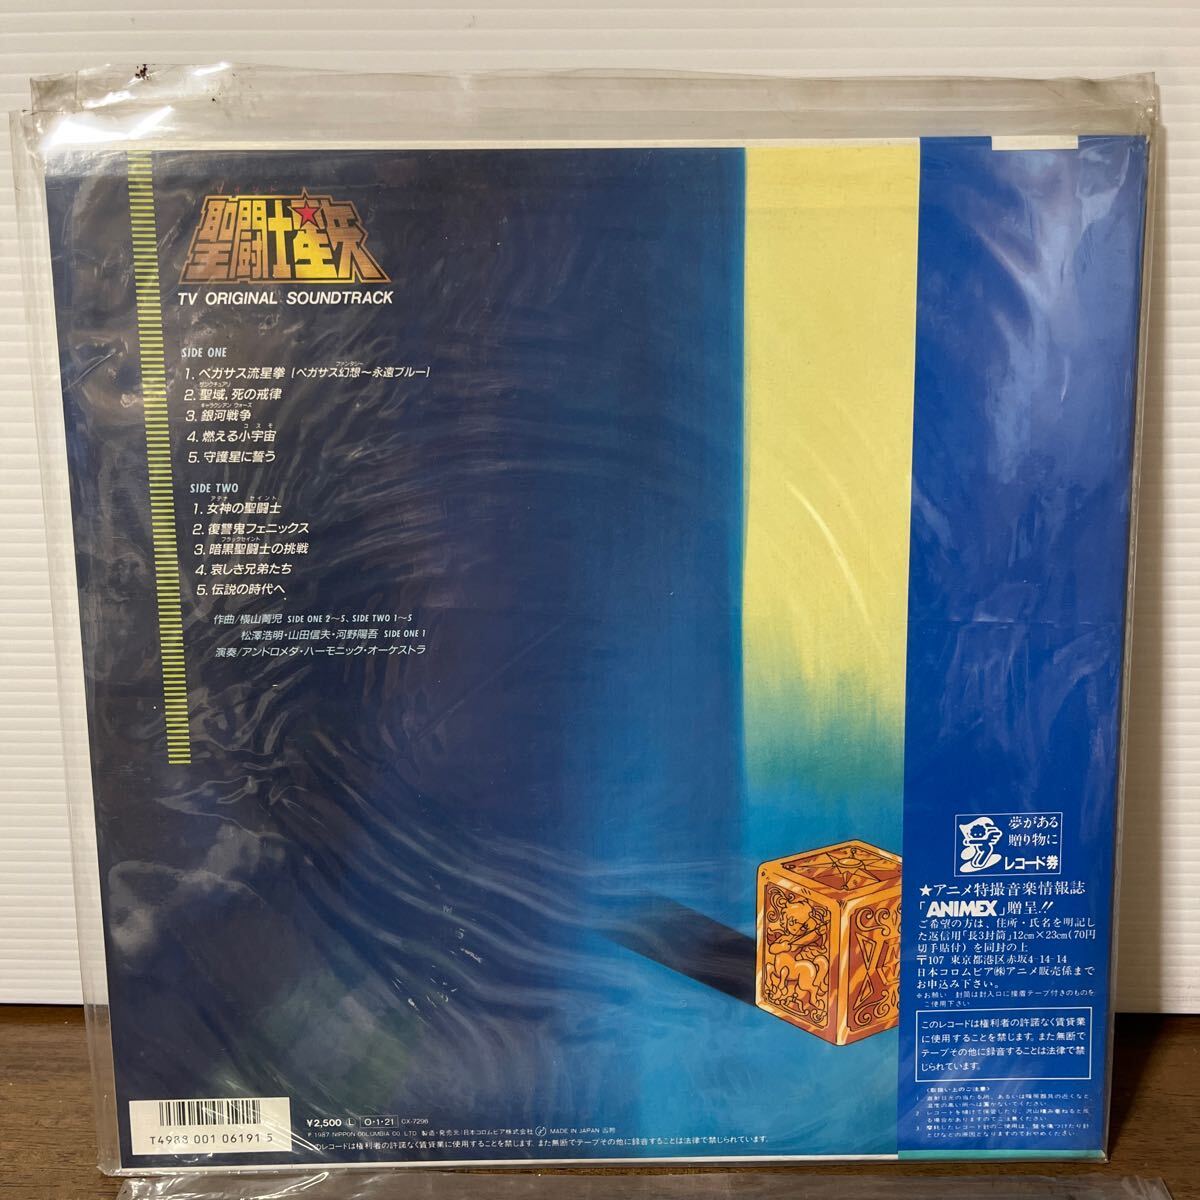 LP запись Saint Seiya MAKEUP/TV ORIGINAL SOUNDTRACK музыка сборник 2 шт. комплект песни из аниме саундтрек LP запись ANIMEX с поясом оби (1-2